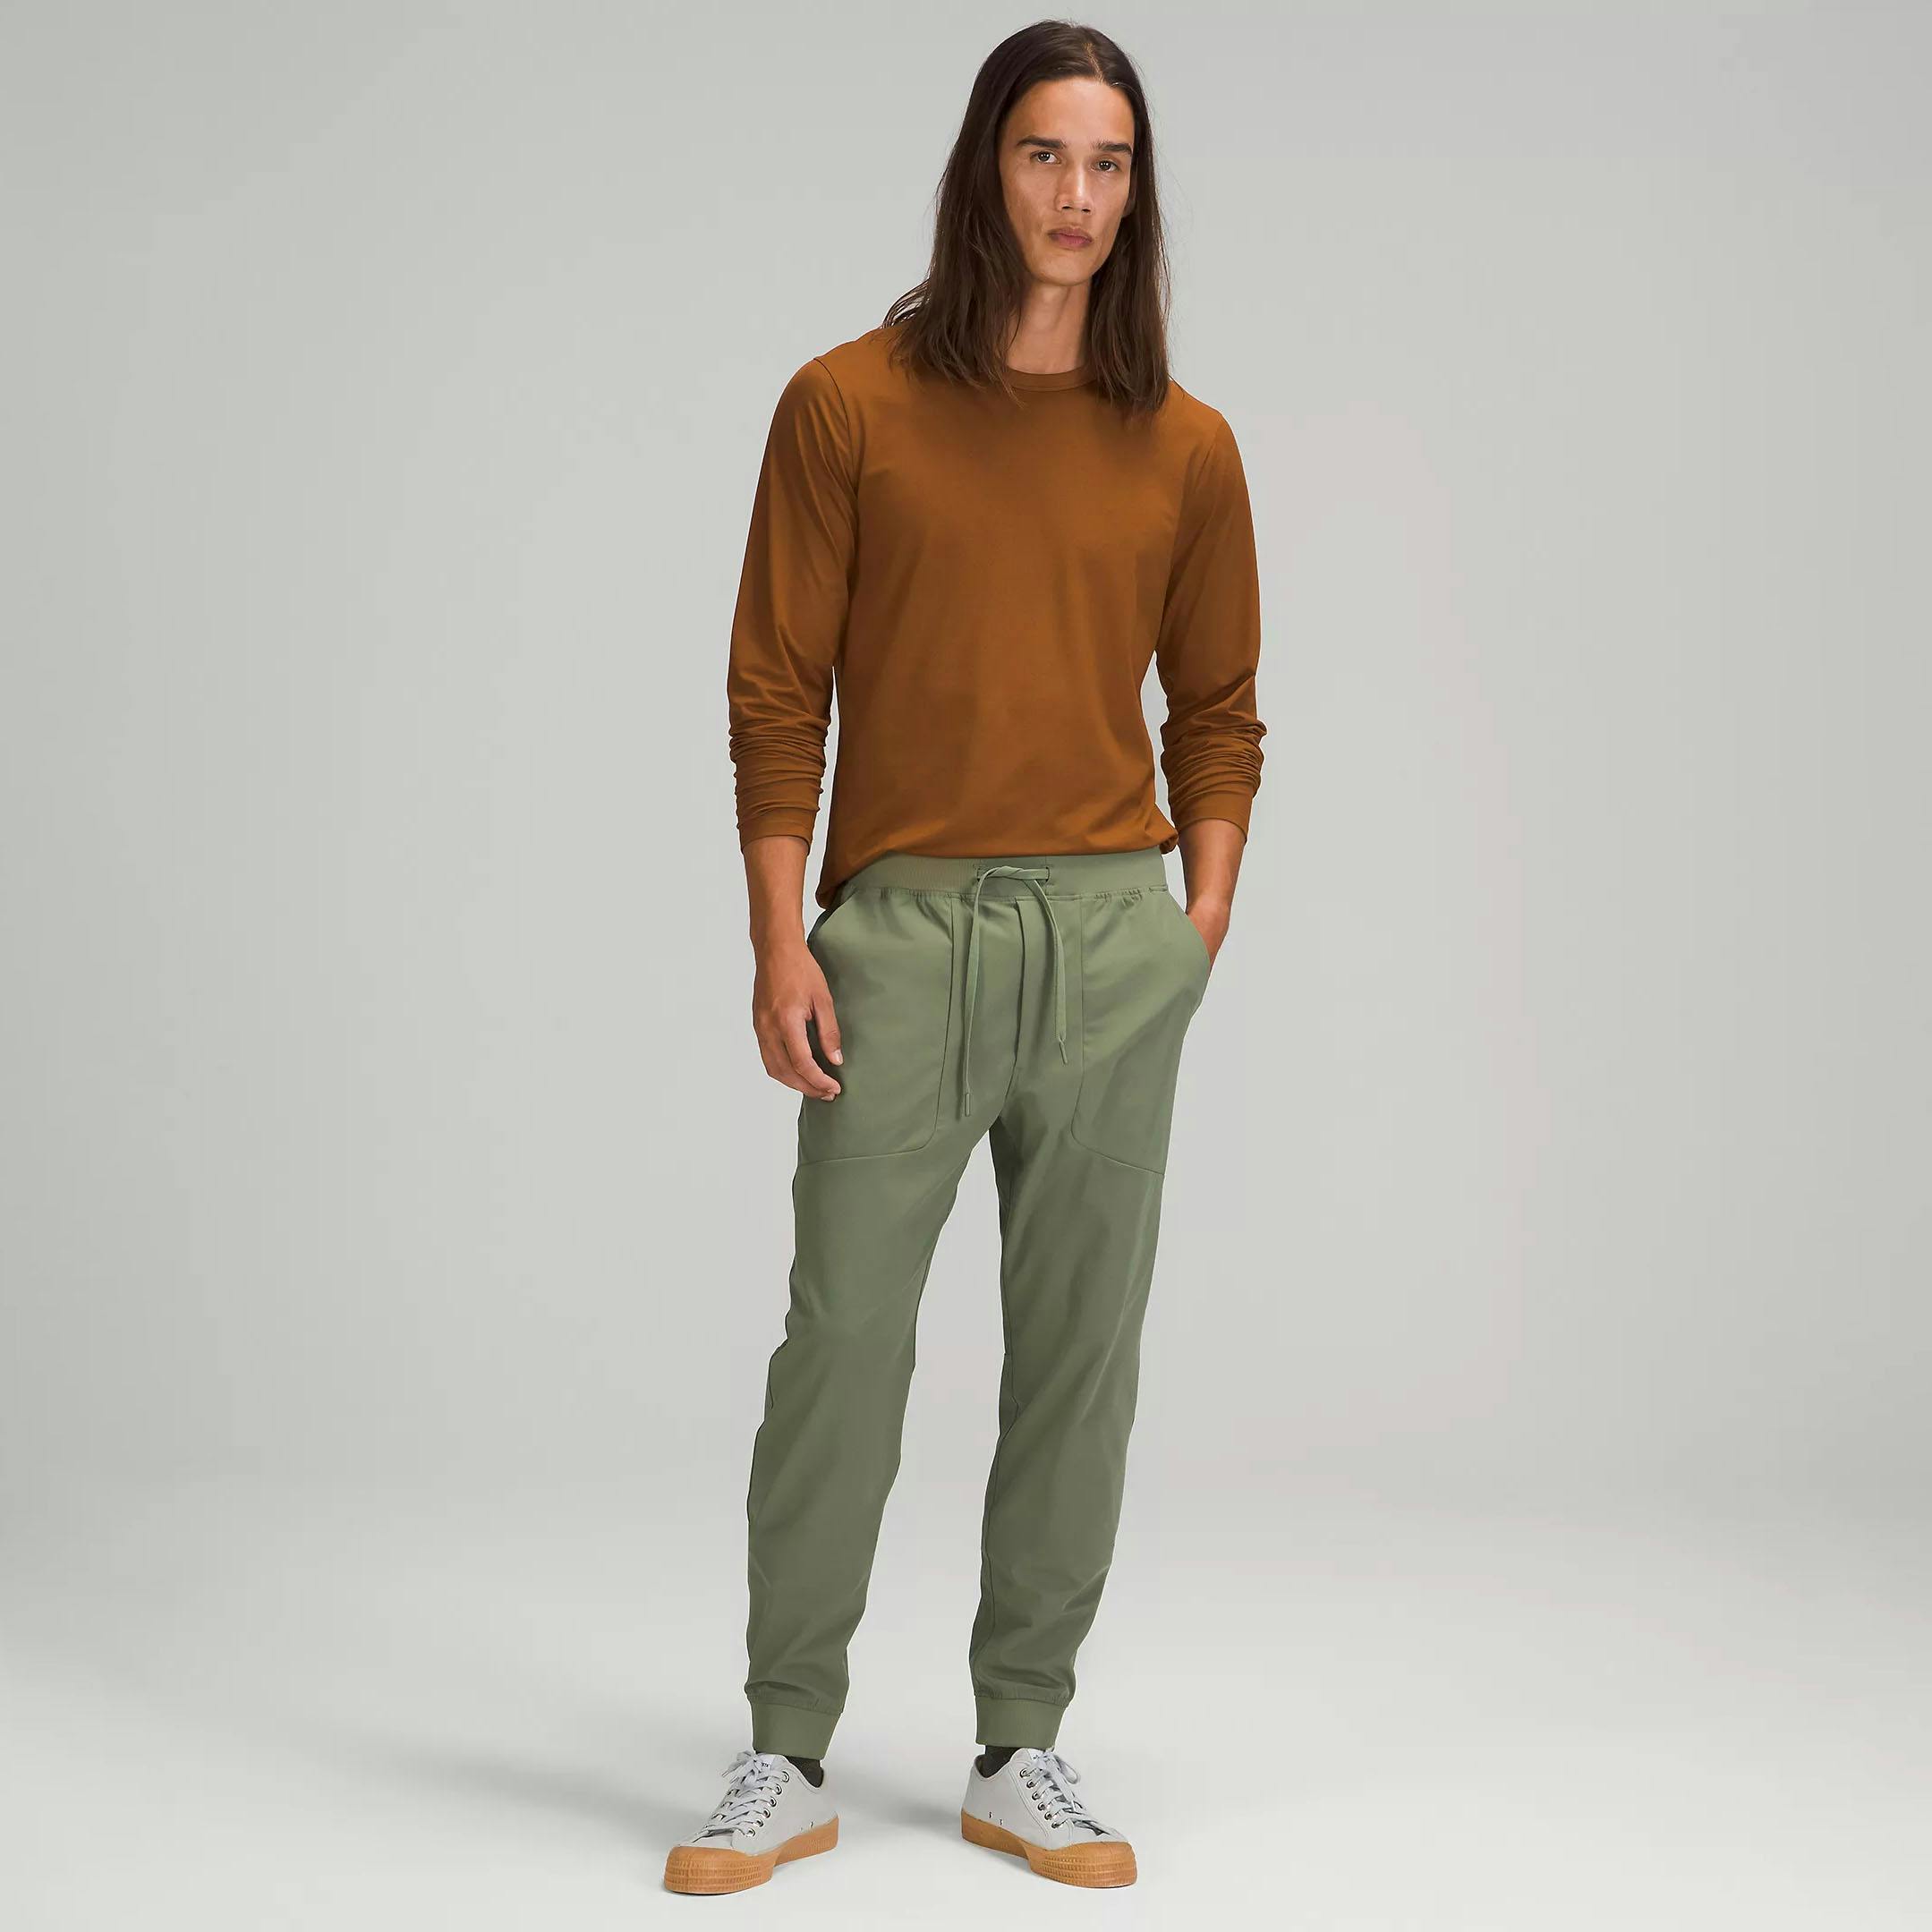 lululemon ABC Jogger - Green Twill, Clothing